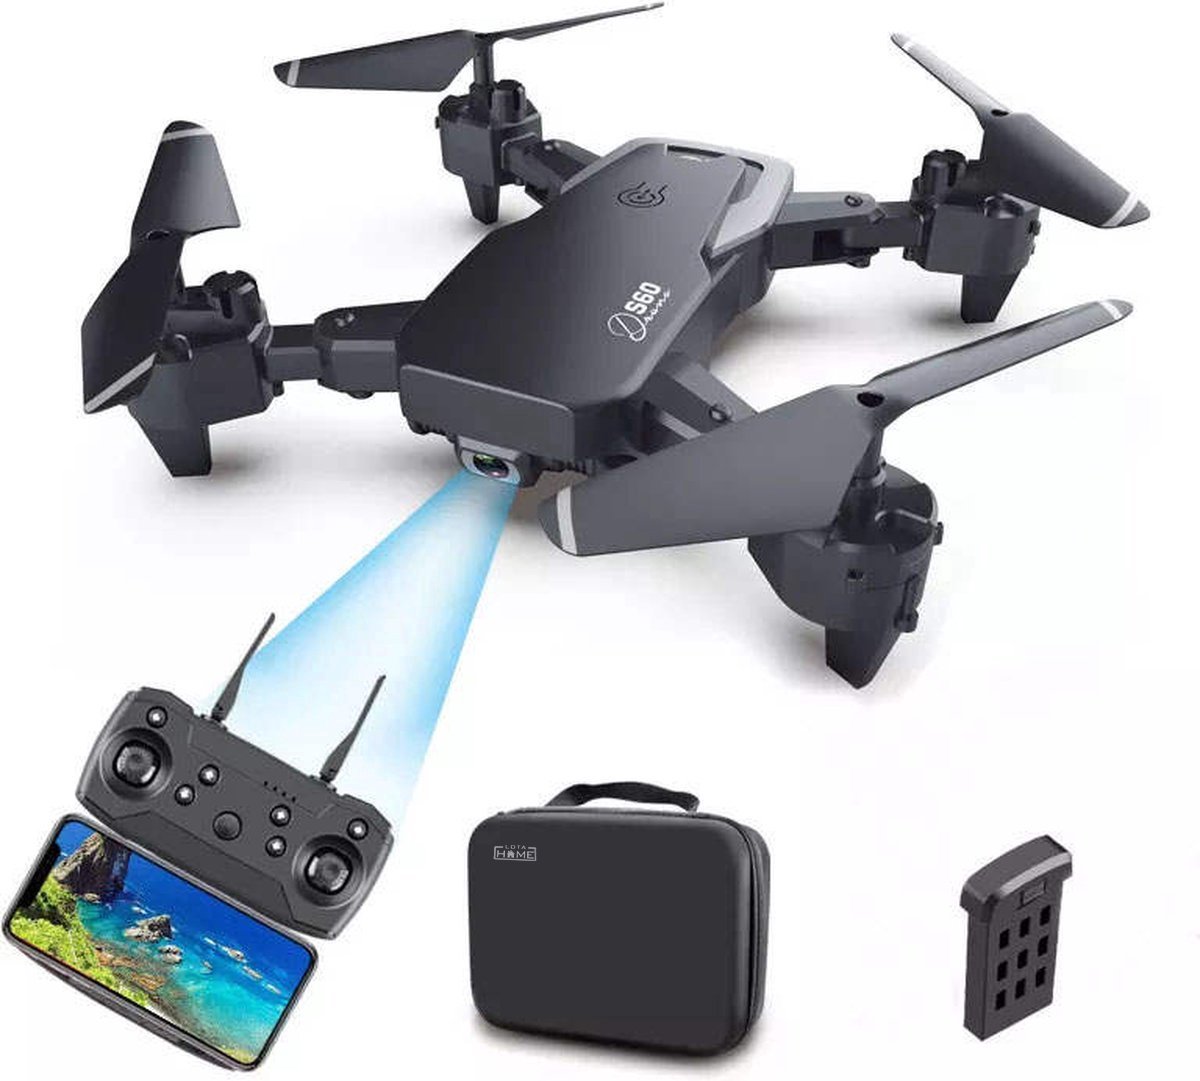 LotaHome - Quad Drone 4K Dubbele Camera - 40 Minuten Vliegtijd - Professionele Mini Drone - Geen Rijbewijs - Inclusief 2 Accu's, Opbergtas en Diverse Accessoires - Voor Binnen & Buiten - Full HD - Drone - Quadcopter - WiFi - Zwart